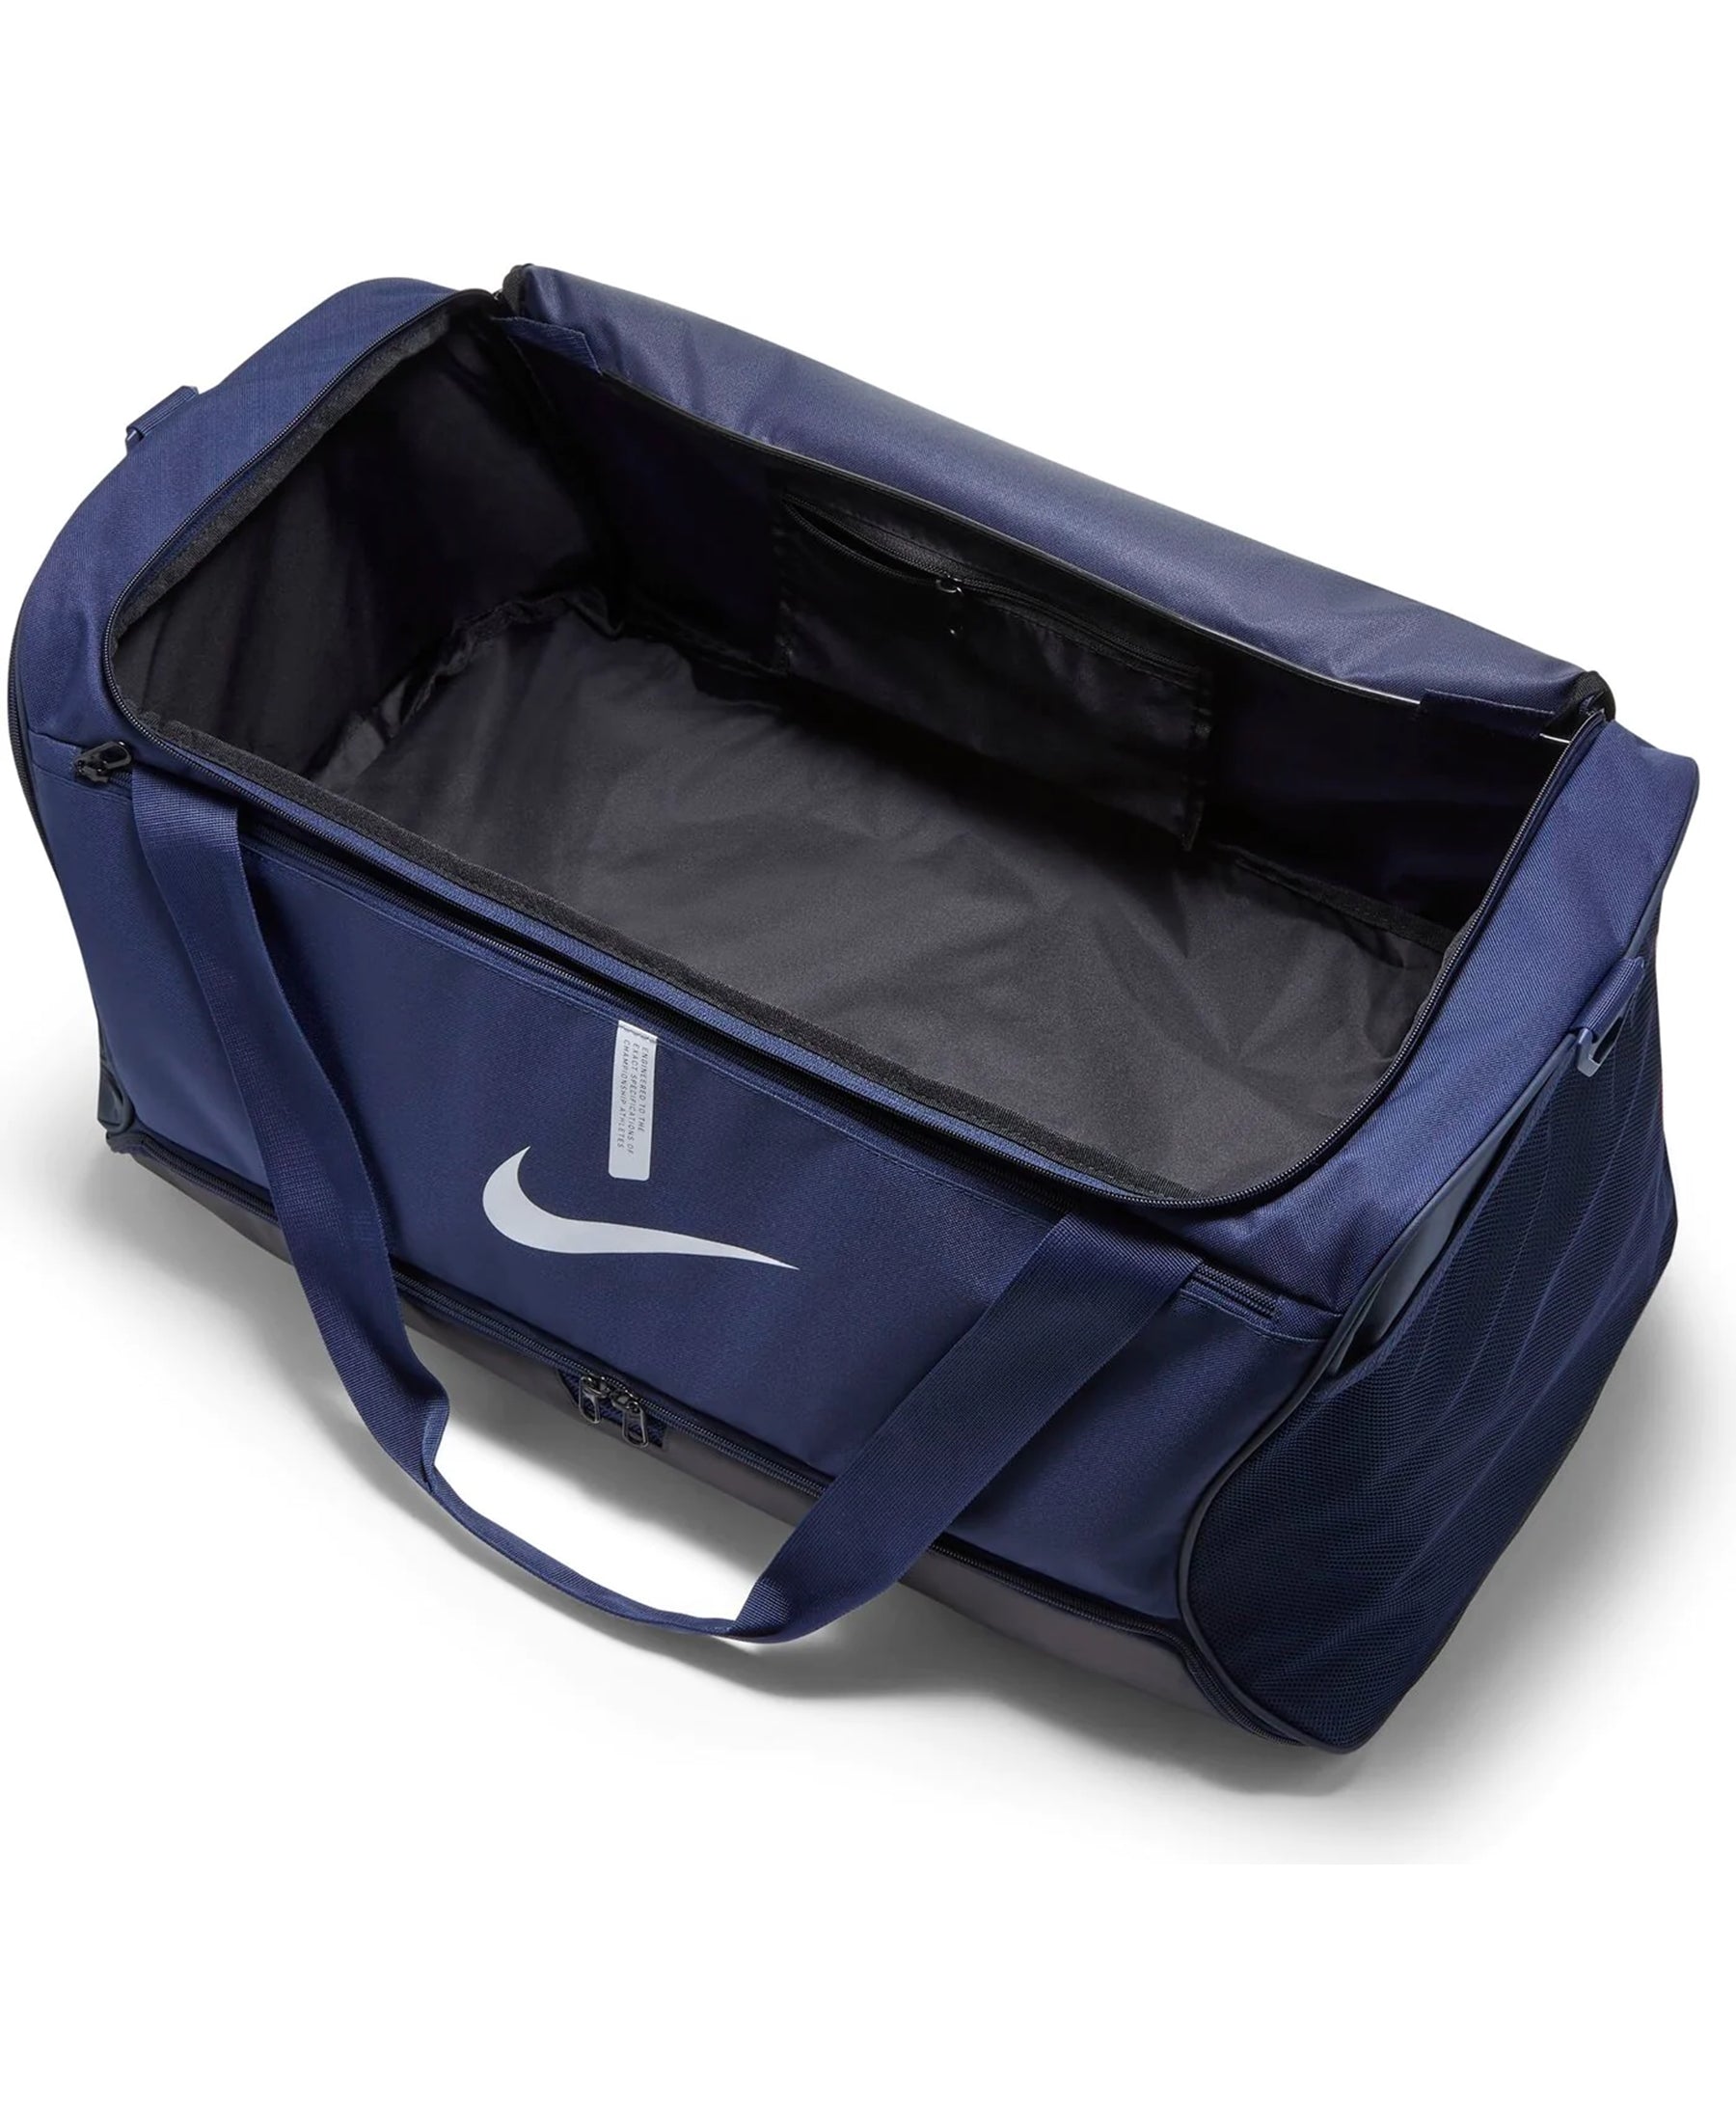 Die Nike Academy Team Duffle Tasche L (CU8089-410) - eine geräumige und funktionale Sporttasche mit Bodenfach, perfekt für den Sport und Alltag. Die ideale Wahl für Sportler und Fitness-Enthusiasten, die auf Qualität und Stil setzen. Bestellen Sie jetzt bei SHOP4TEAMSPORT und seien Sie bestens ausgestattet!